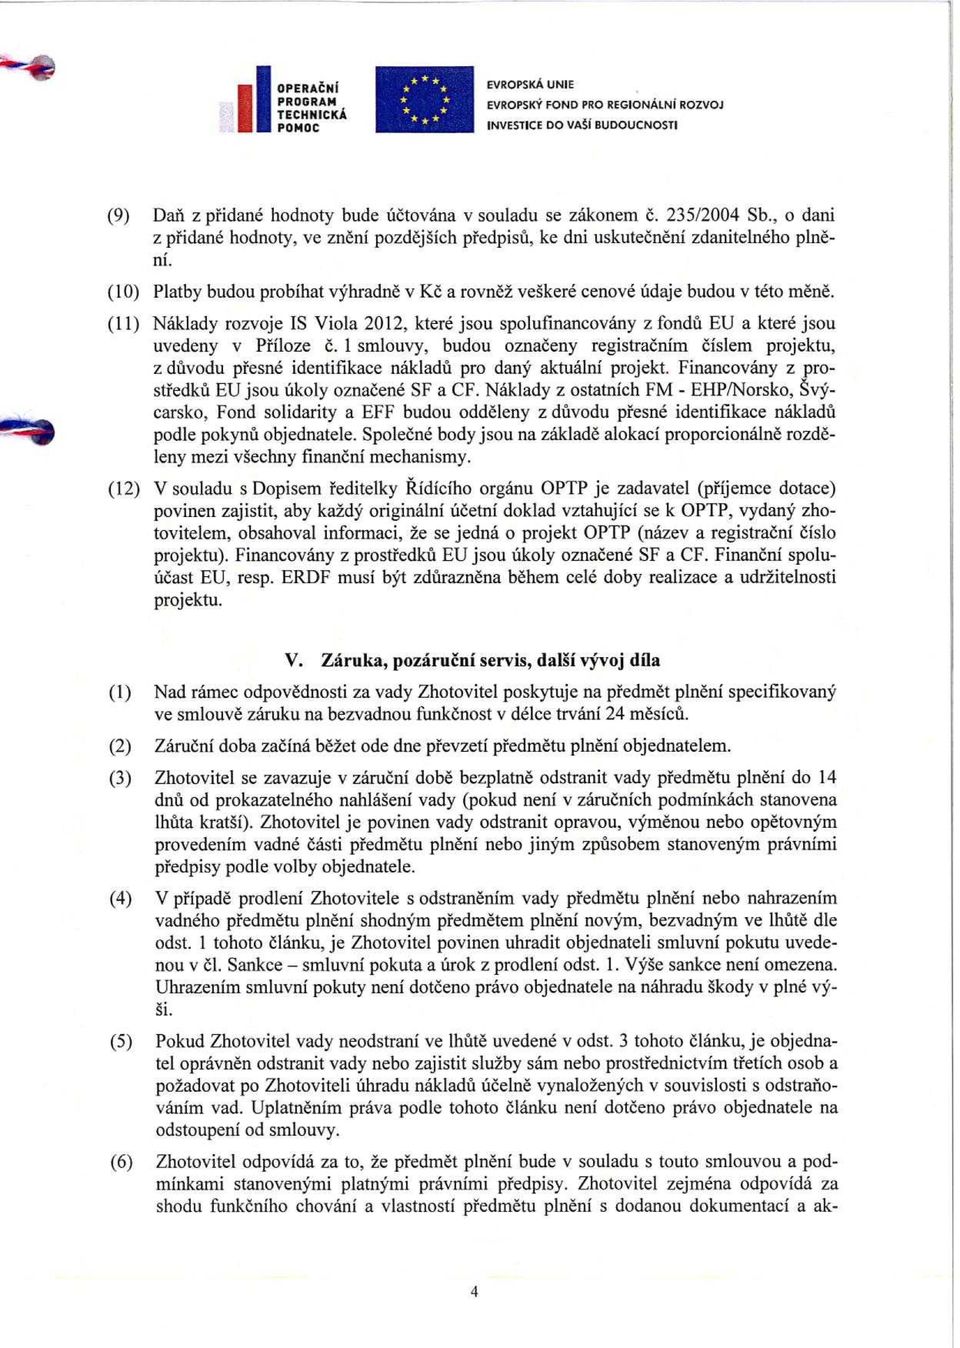 (11) Naklady rozvoje IS Viola 2012, ktere jsou spolufinancovany z fondu EU a ktere jsou uvedeny v Pfiloze 6.